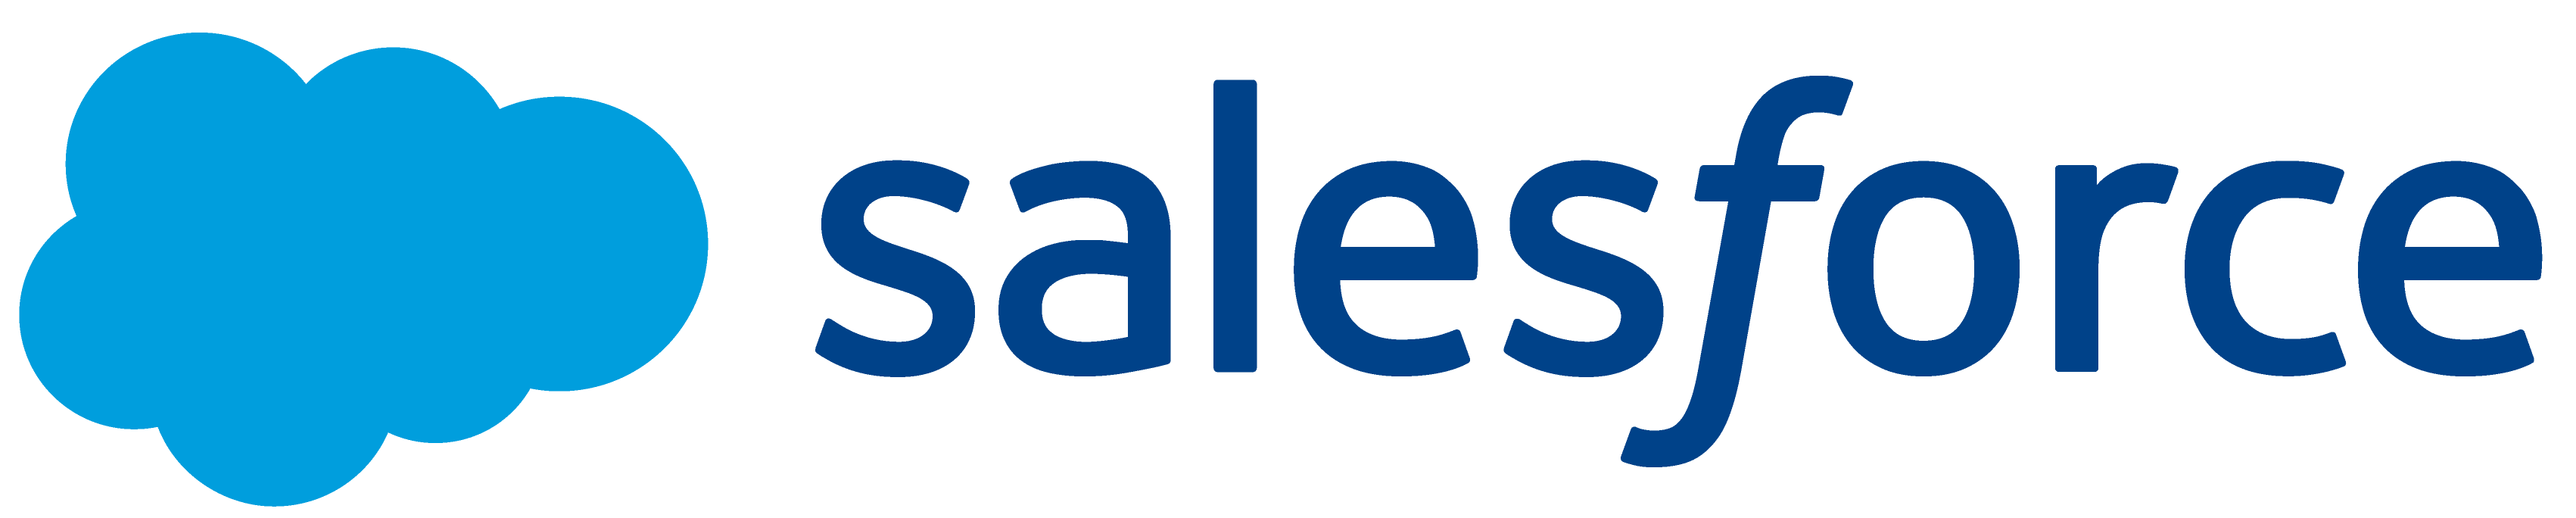 Salesforce Horizontal Logo